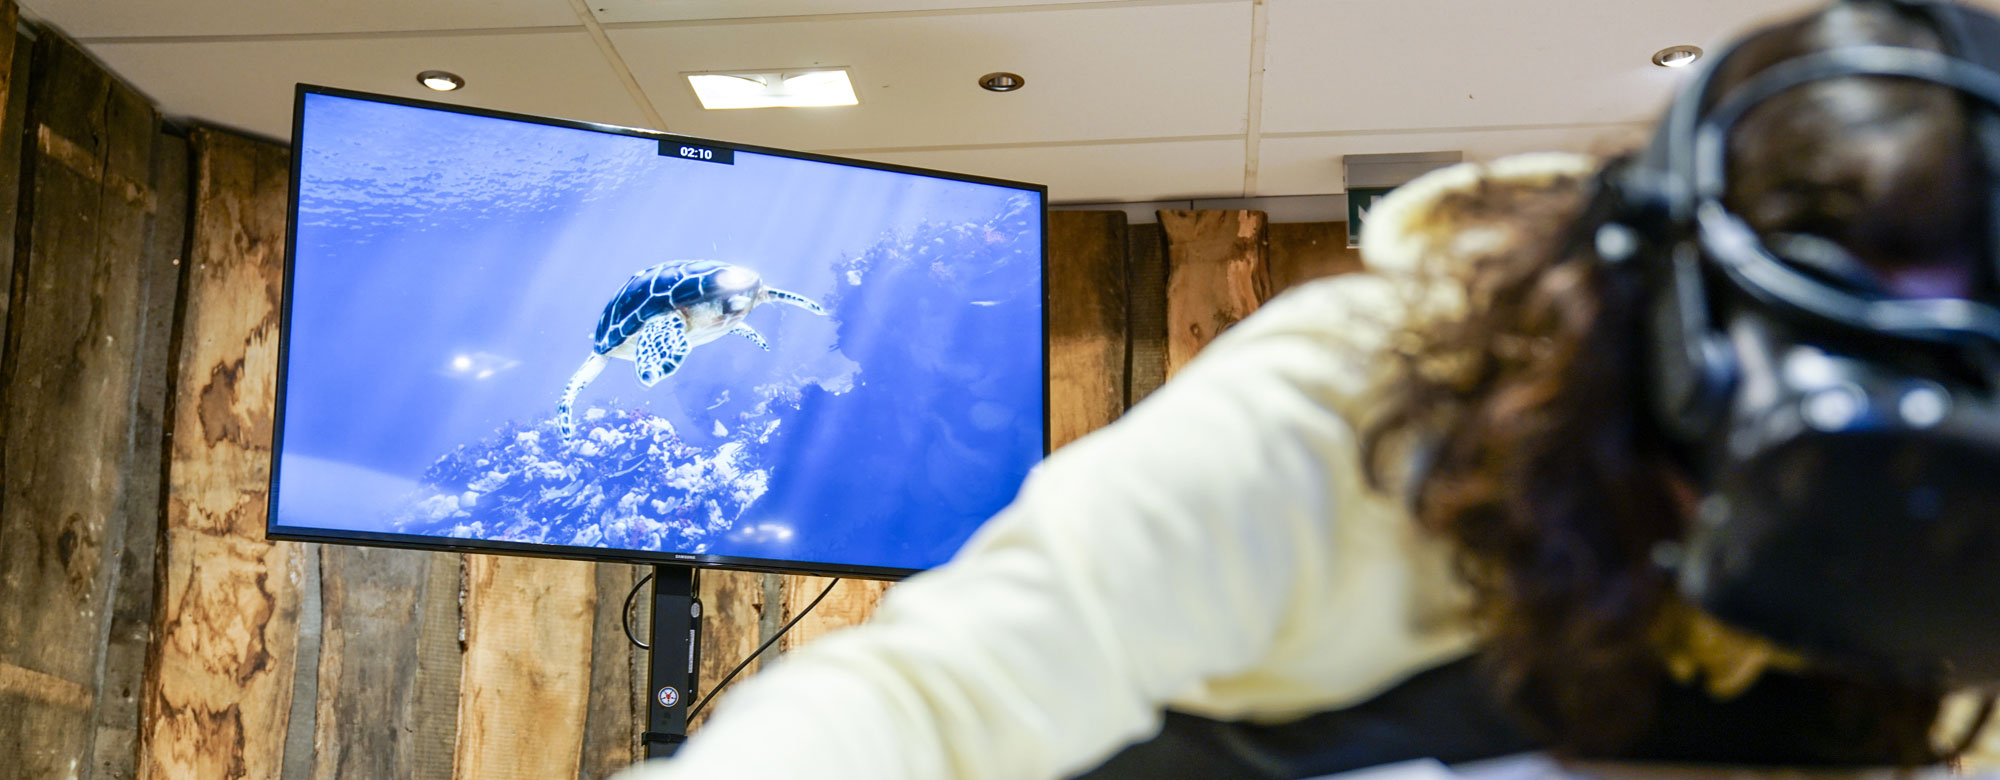 Eine Person bewegt sich auf einem Simulator, auf dessen Bildschirm eine tauchende Schildkröte erscheint.